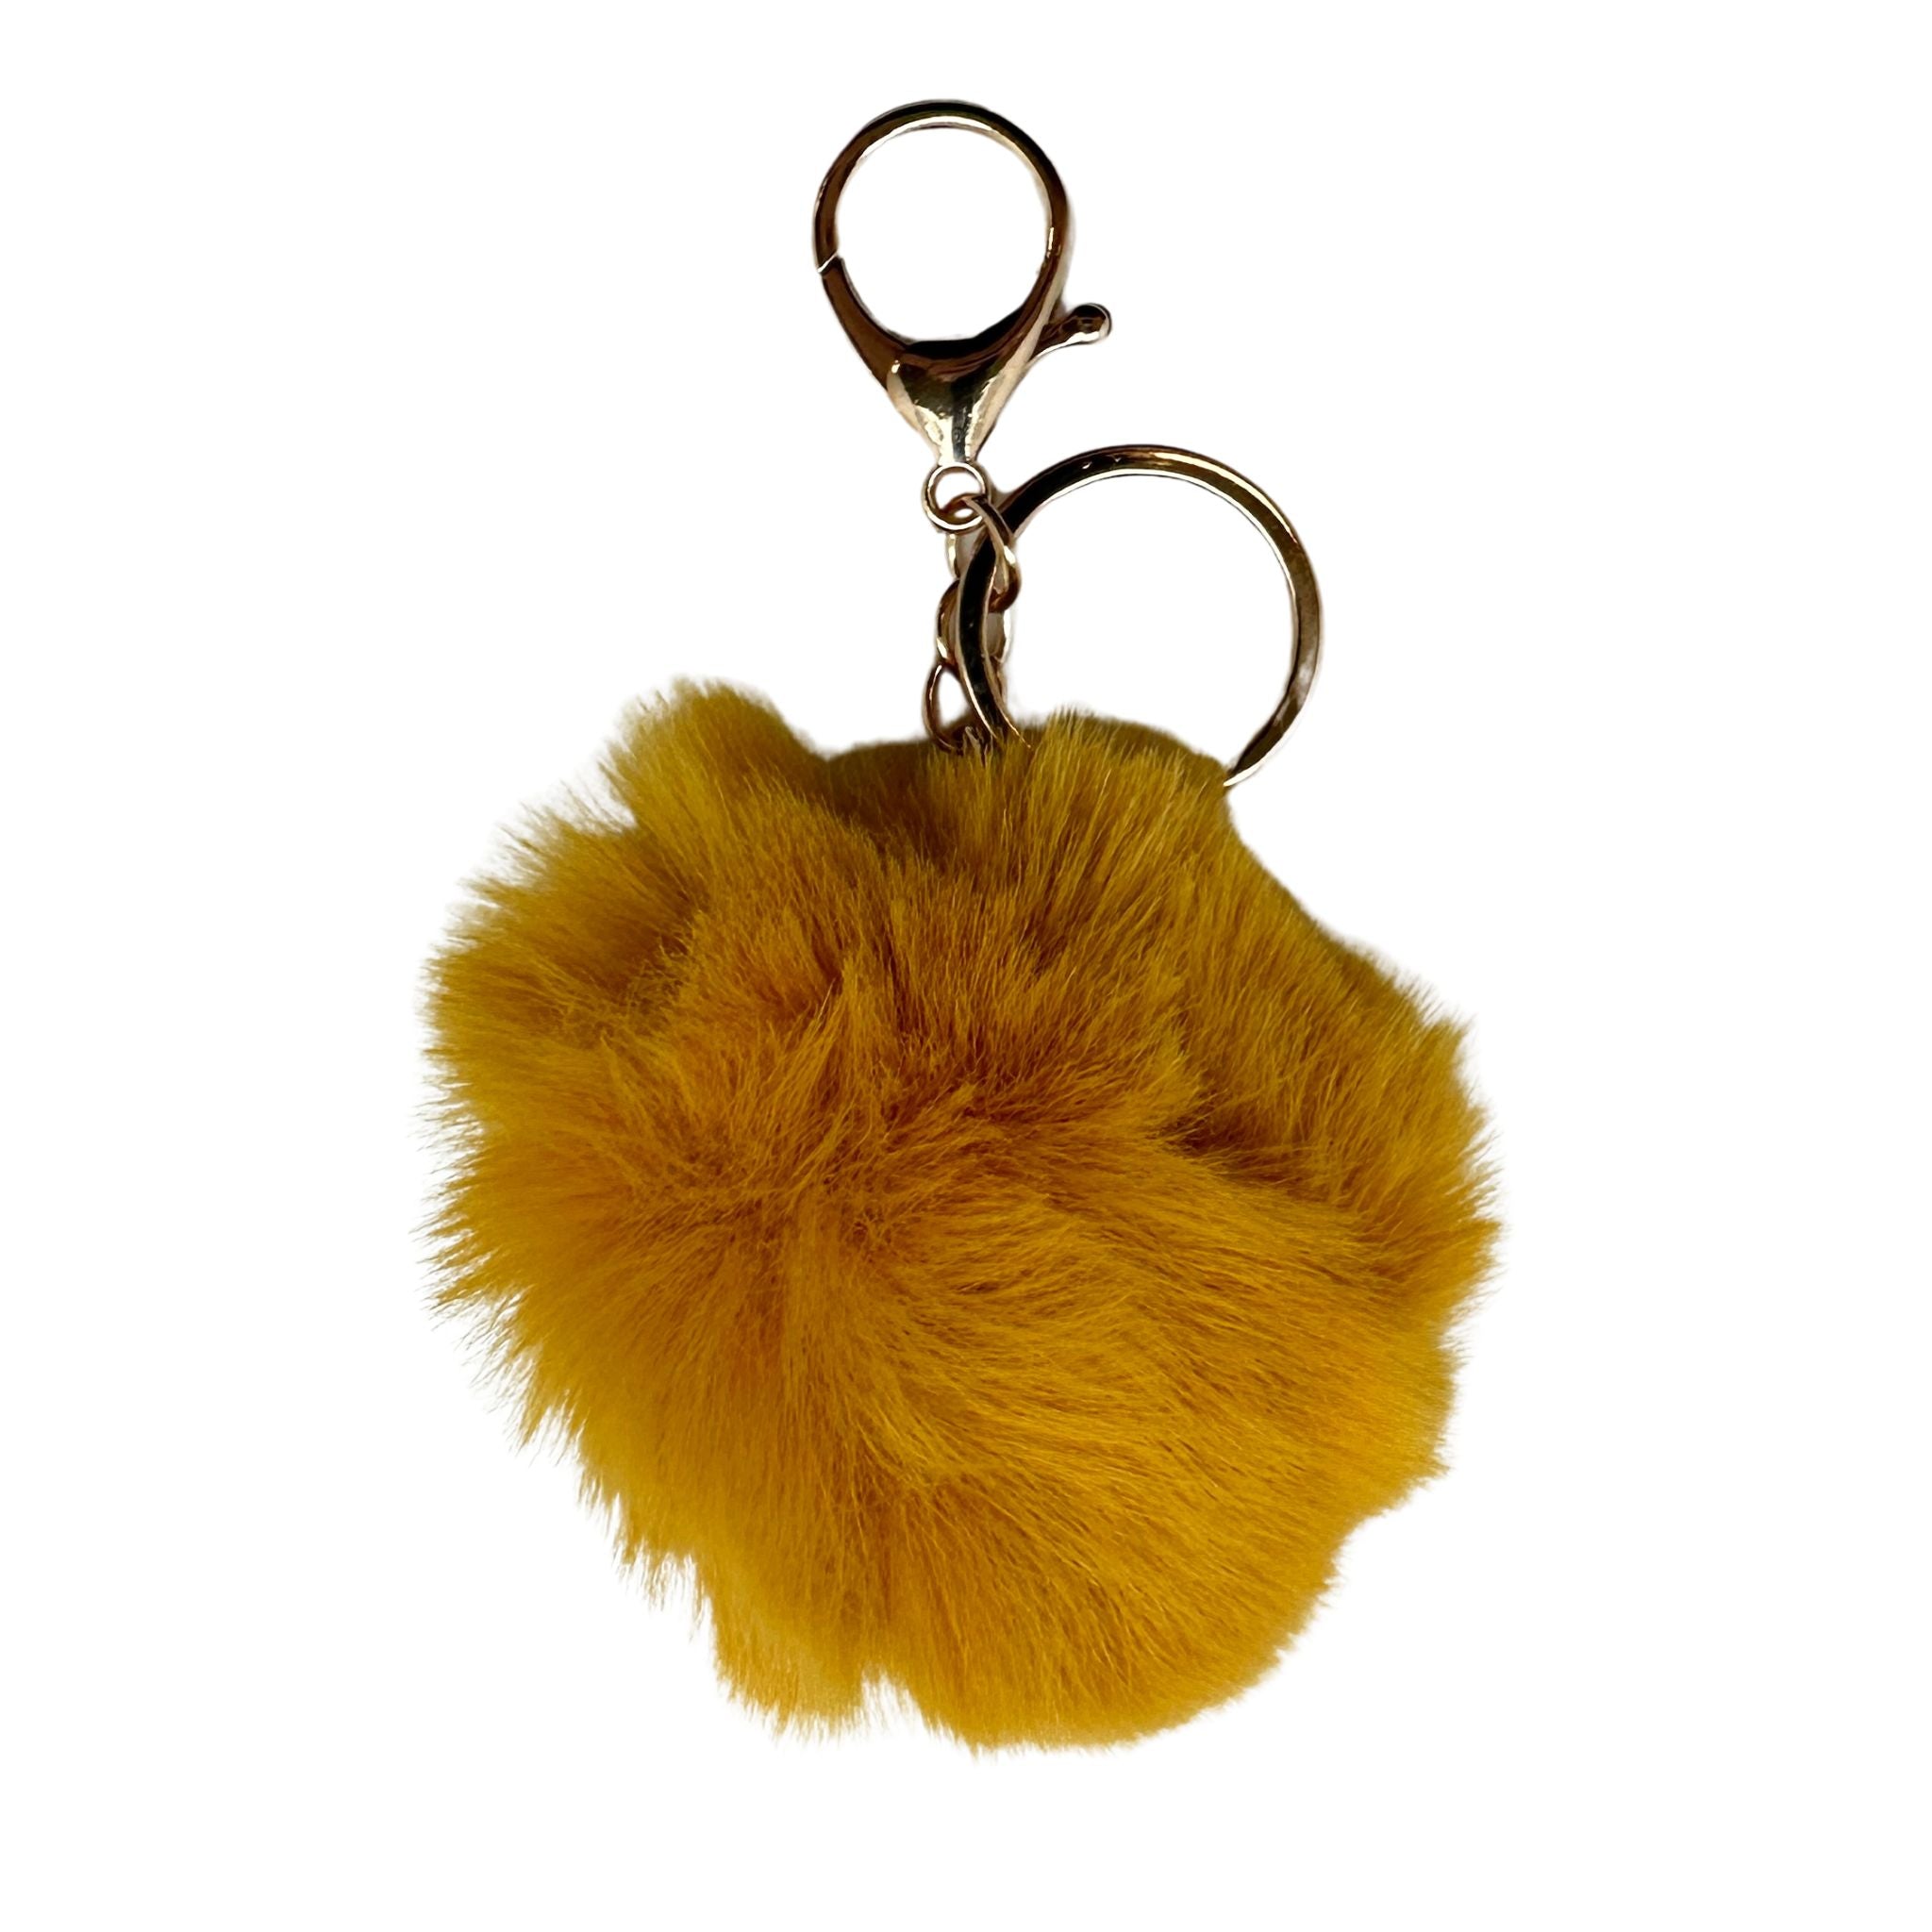 Faux Fur Pom Pom Keychain - Golden Yellow